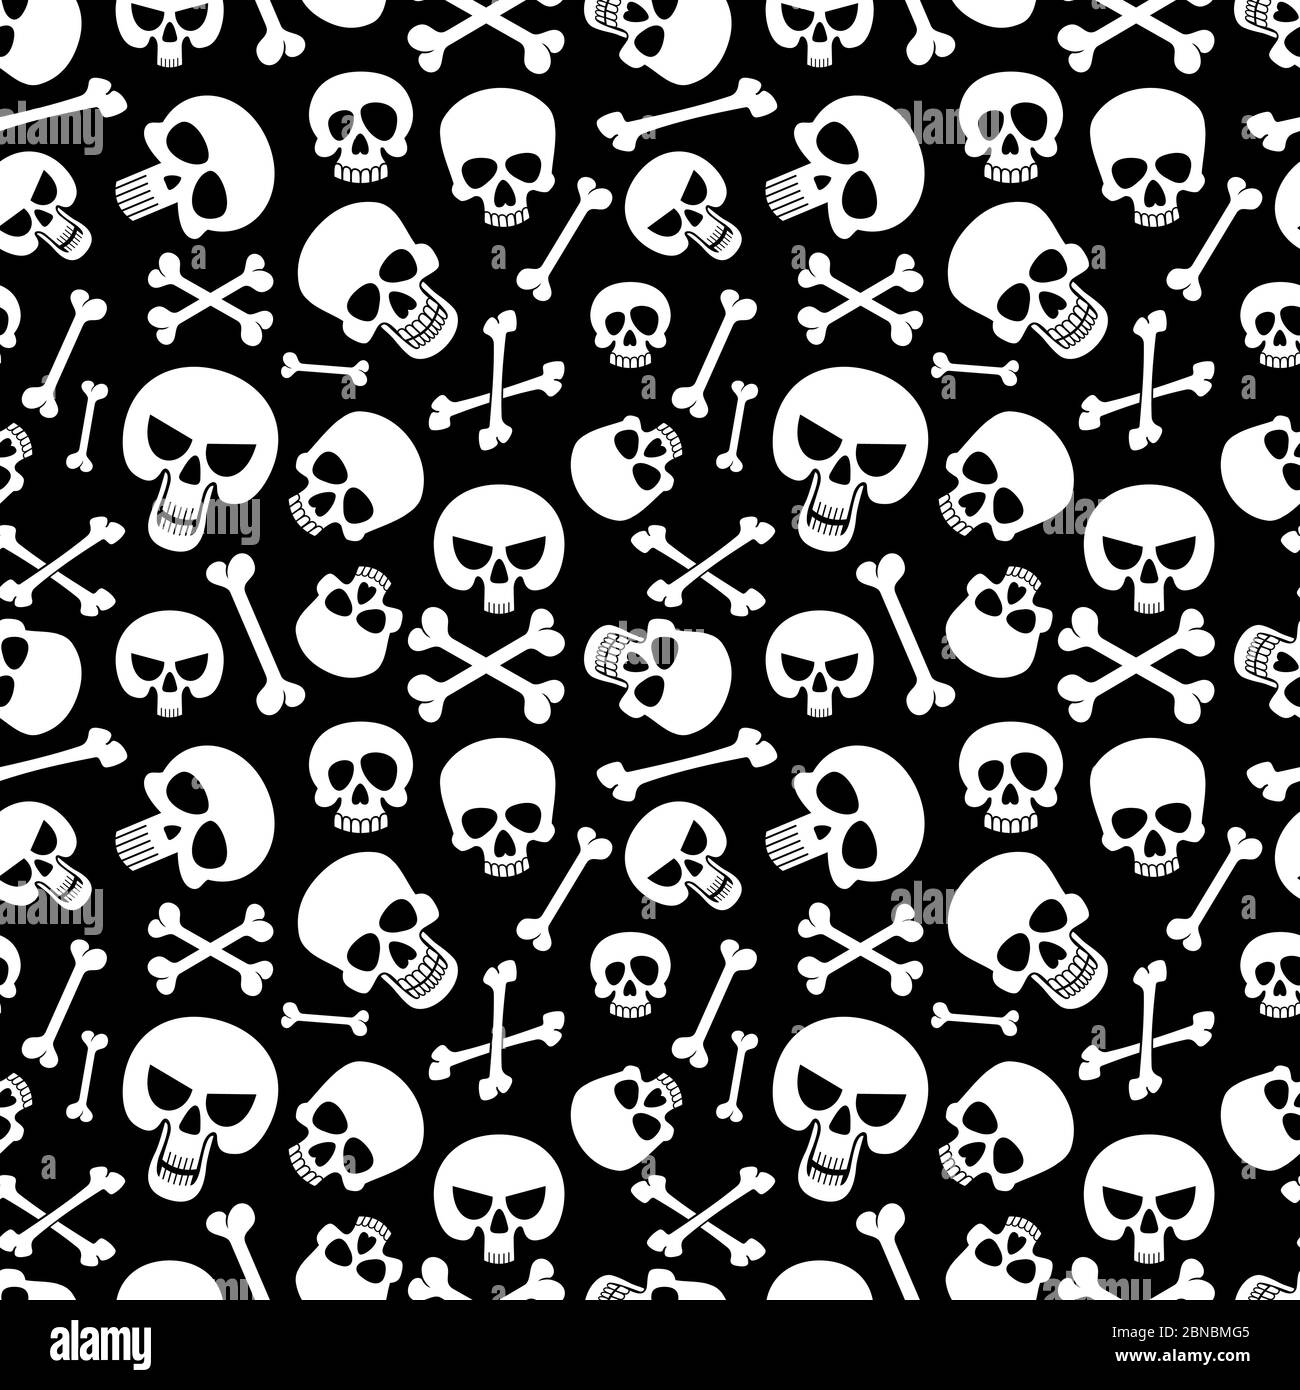 Knochen und Schädel nahtlose Muster Hintergrund für Mode, halloween, Piraterie. Vektorgrafik Stock Vektor